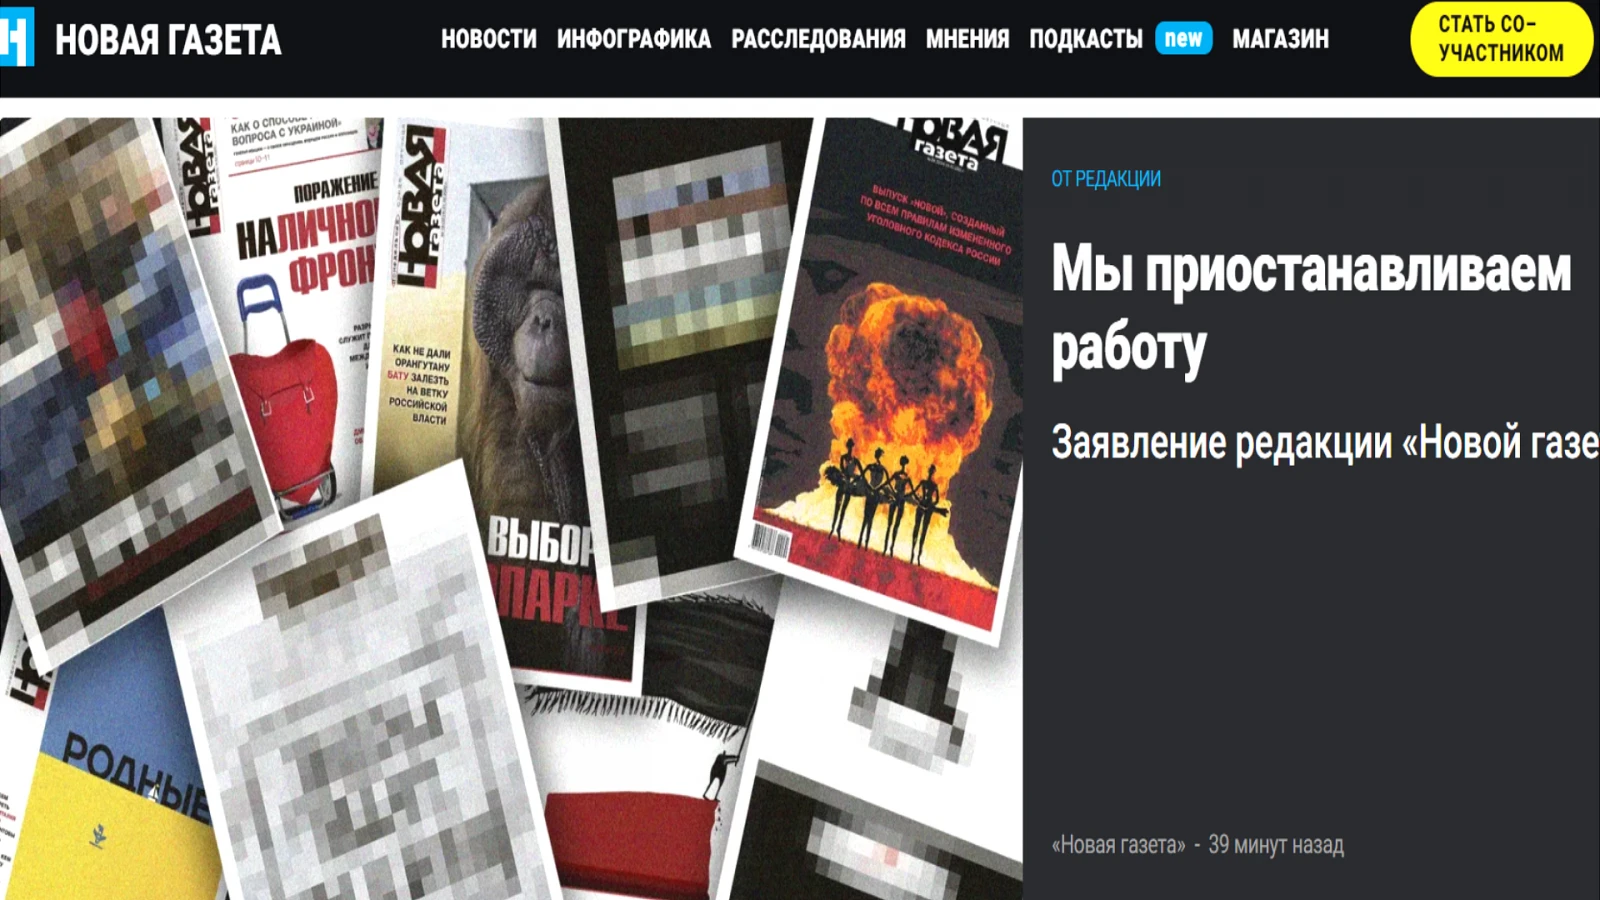 Новая газета обяви спиране на работата след предупреждение от Роскомнадзор